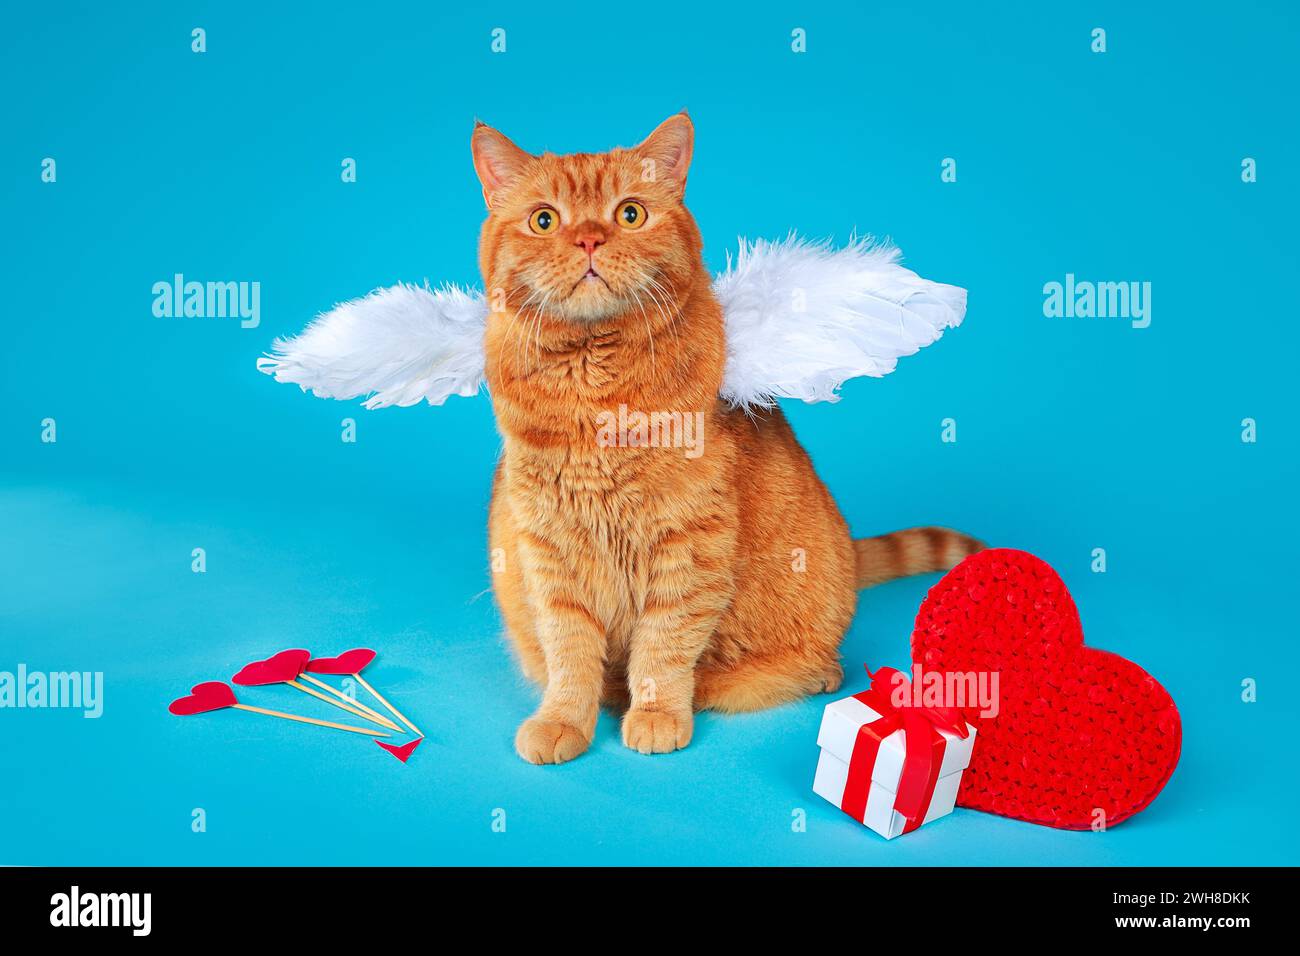 Cupidon de la Saint-Valentin. Portrait de chat britannique au gingembre avec ailes blanches d'ange sur fond bleu. Banque D'Images